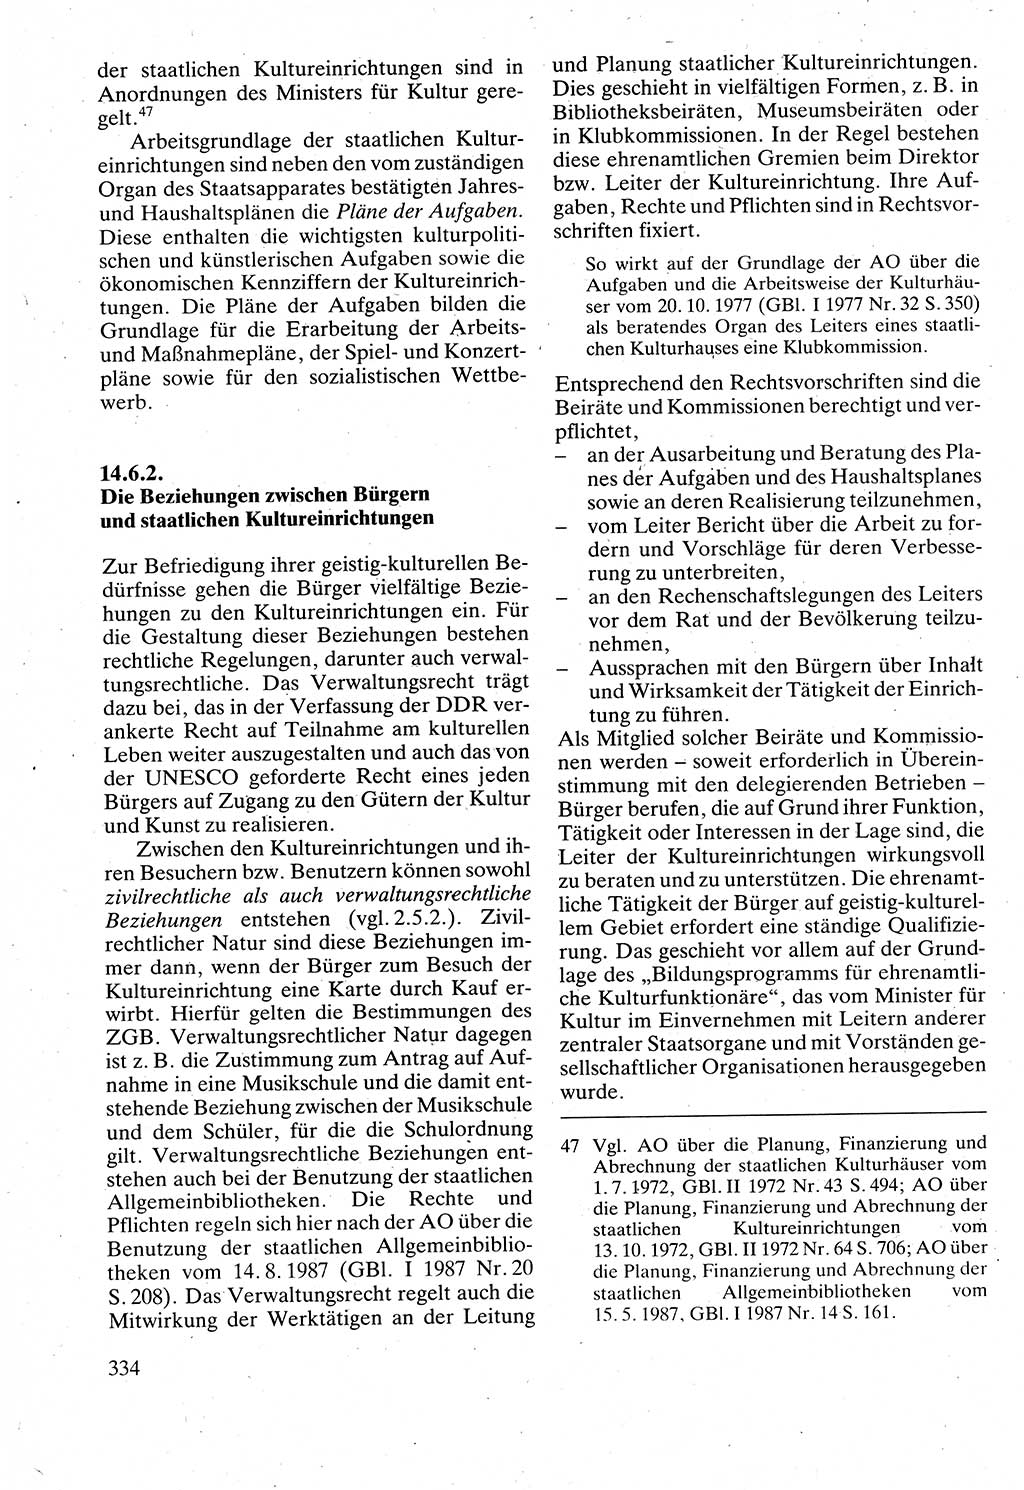 Verwaltungsrecht [Deutsche Demokratische Republik (DDR)], Lehrbuch 1988, Seite 334 (Verw.-R. DDR Lb. 1988, S. 334)